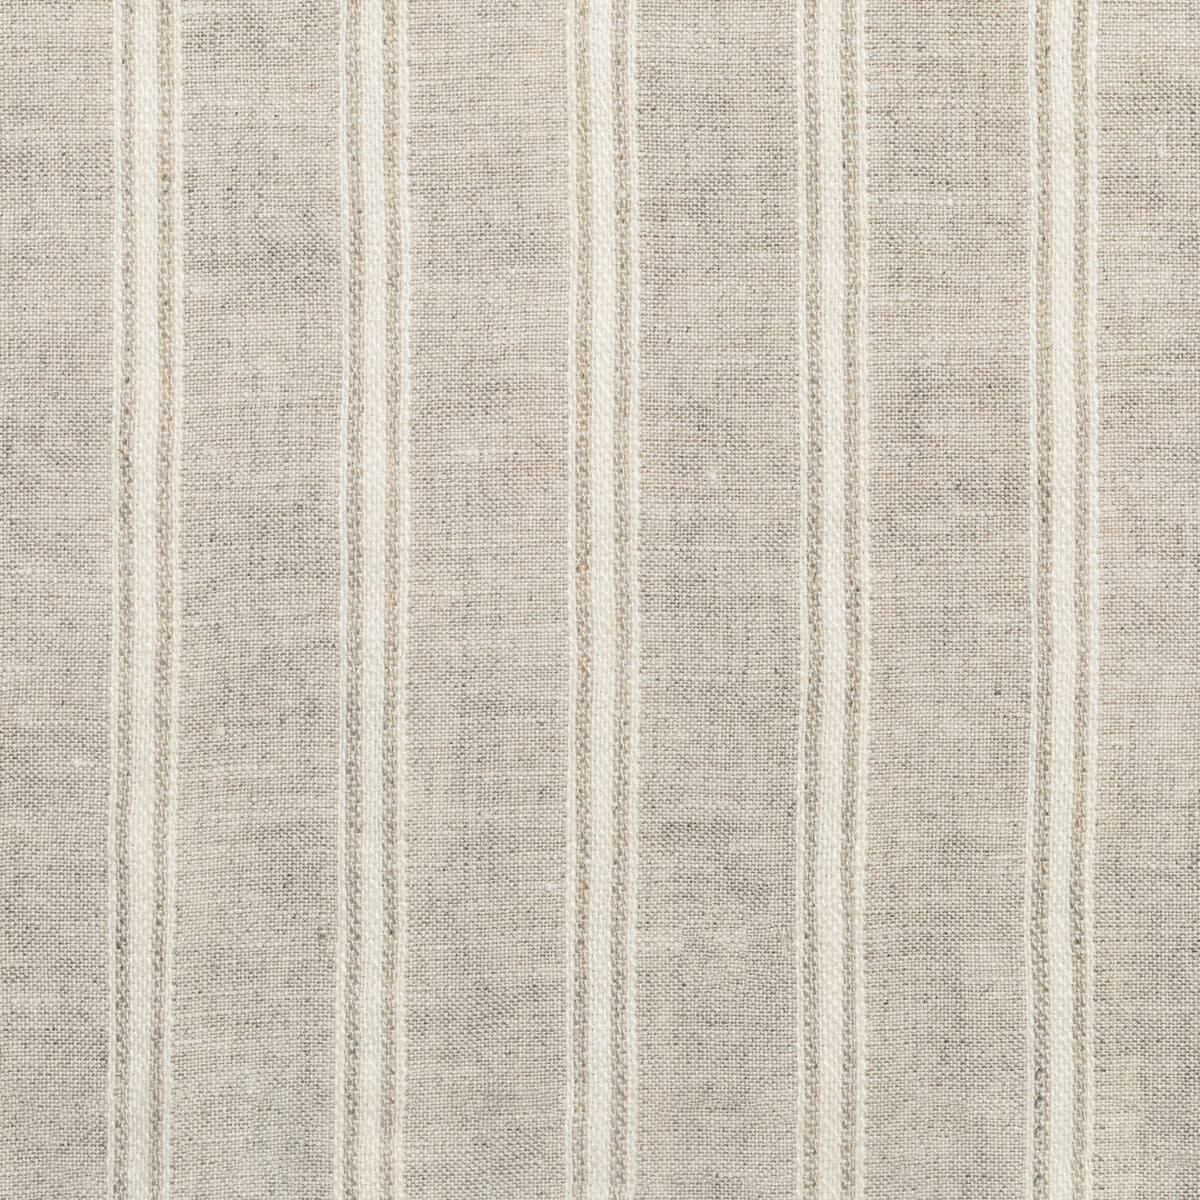 Kravet Design fabric in 4842-16 color - pattern 4842.16.0 - by Kravet Design